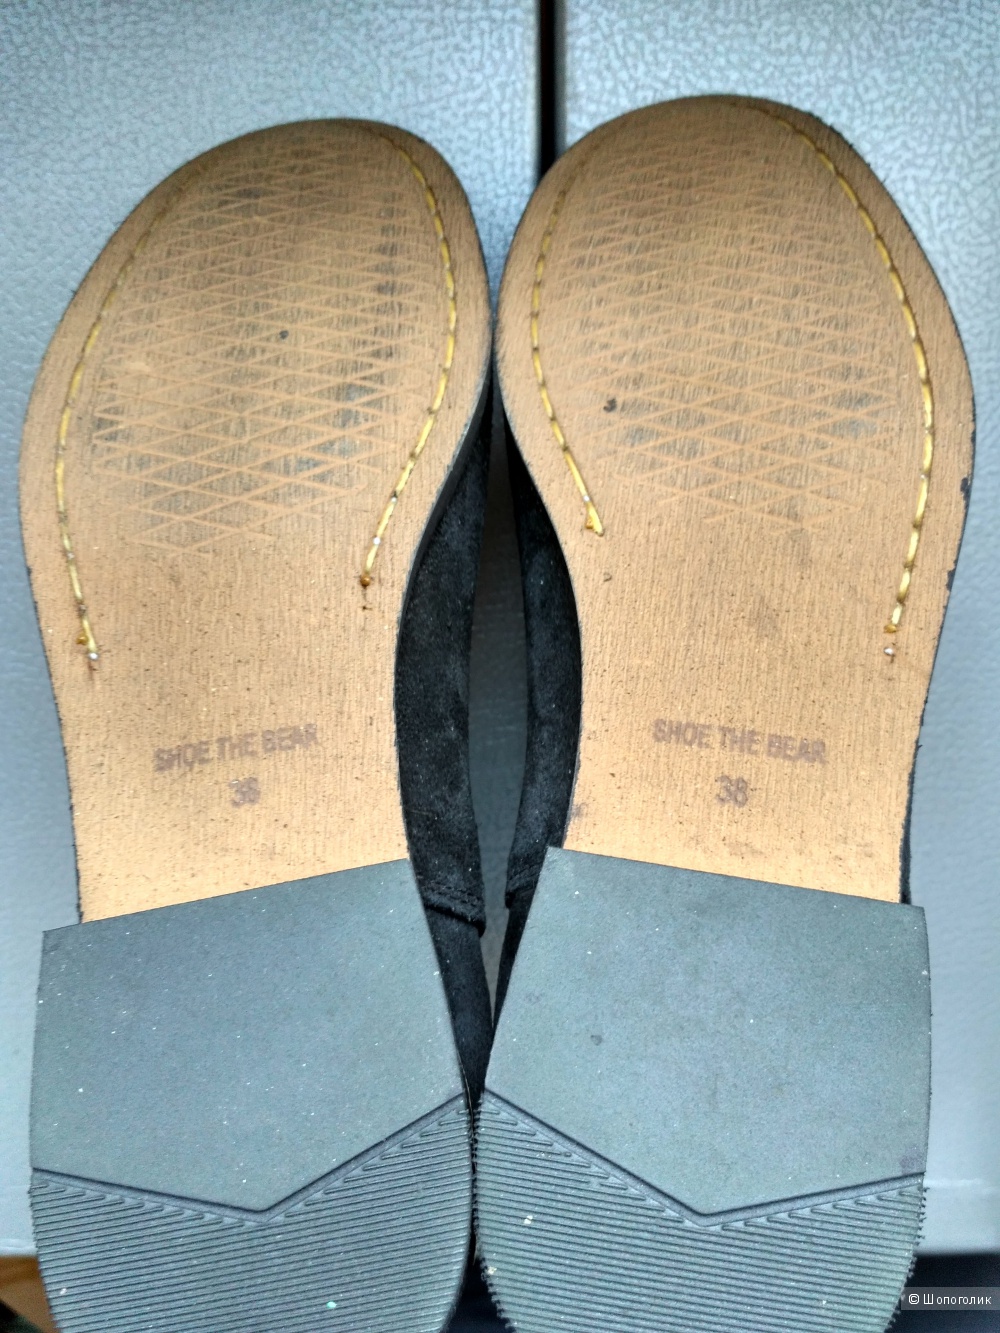 Shoe The Bear замшевые чёрные ботинки-челси, 38 р.